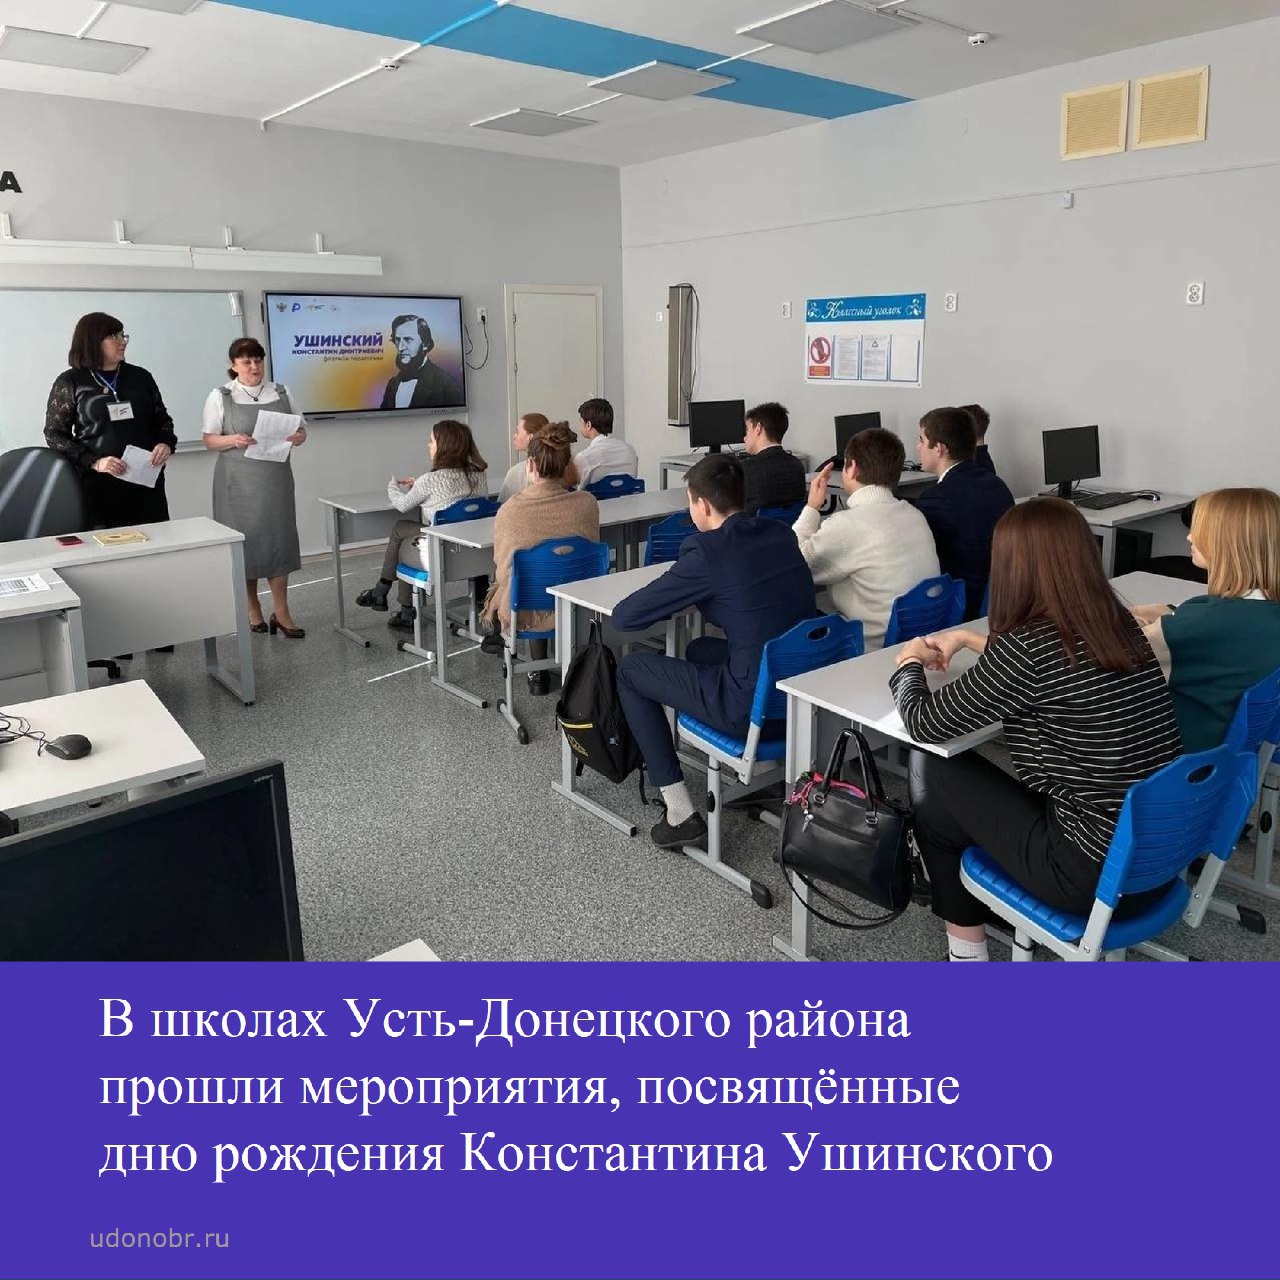 В школах Усть-Донецкого района прошли мероприятия, посвященные дню рождения Константина Ушинского